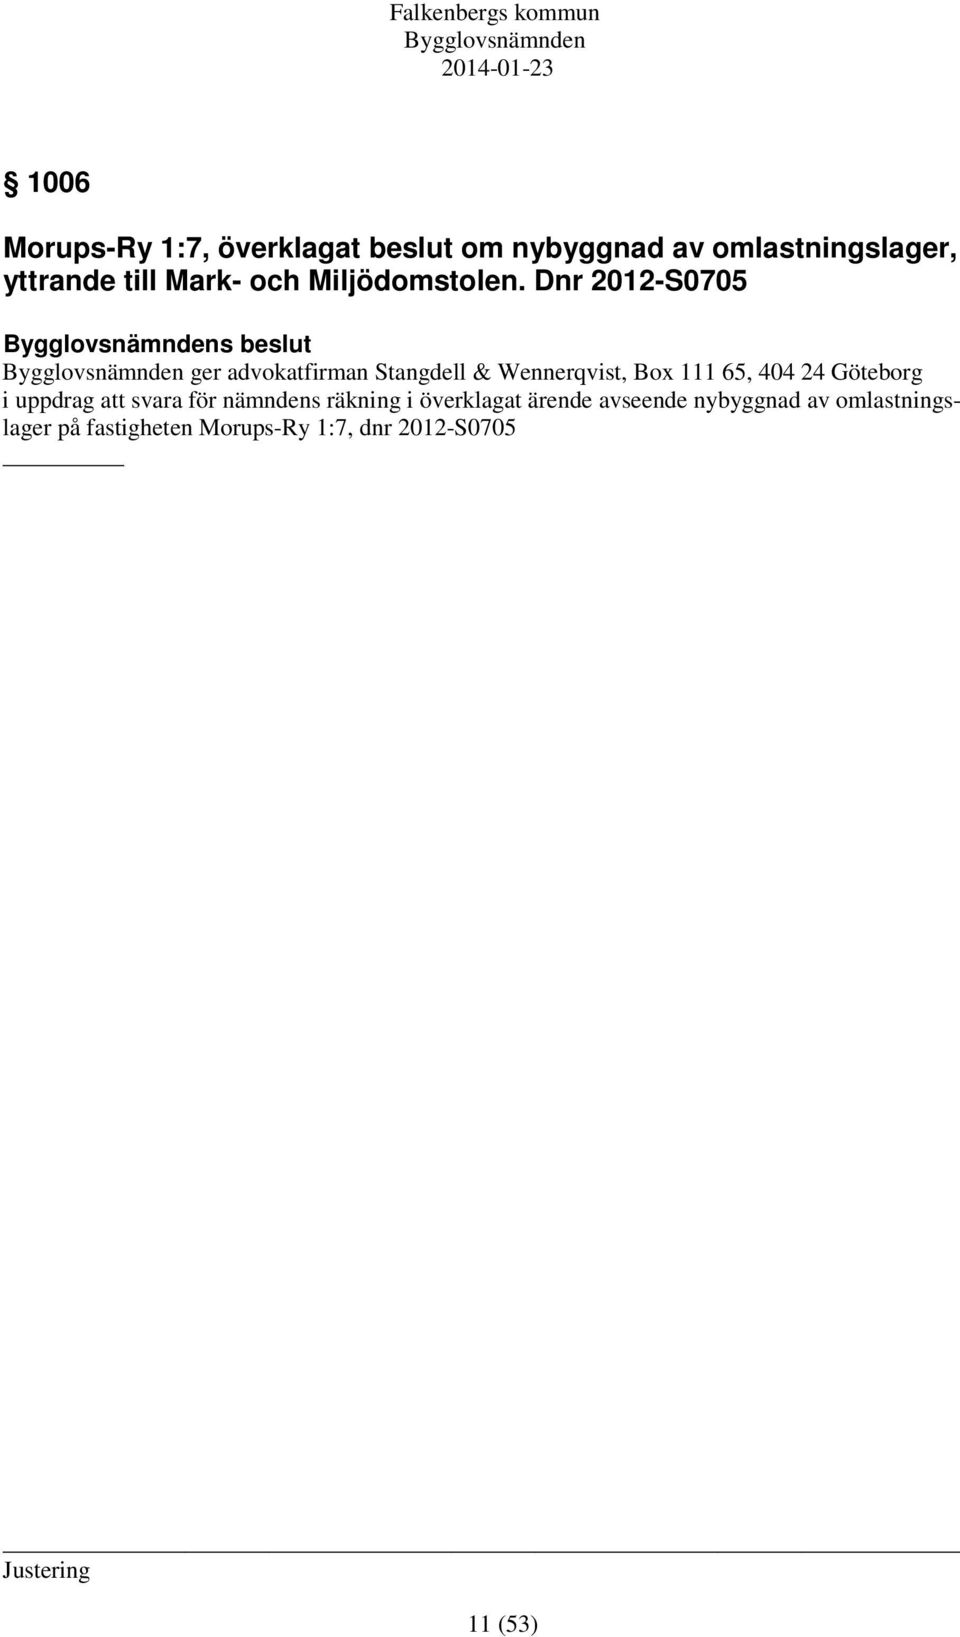 Dnr 2012-S0705 s beslut ger advokatfirman Stangdell & Wennerqvist, Box 111 65, 404 24